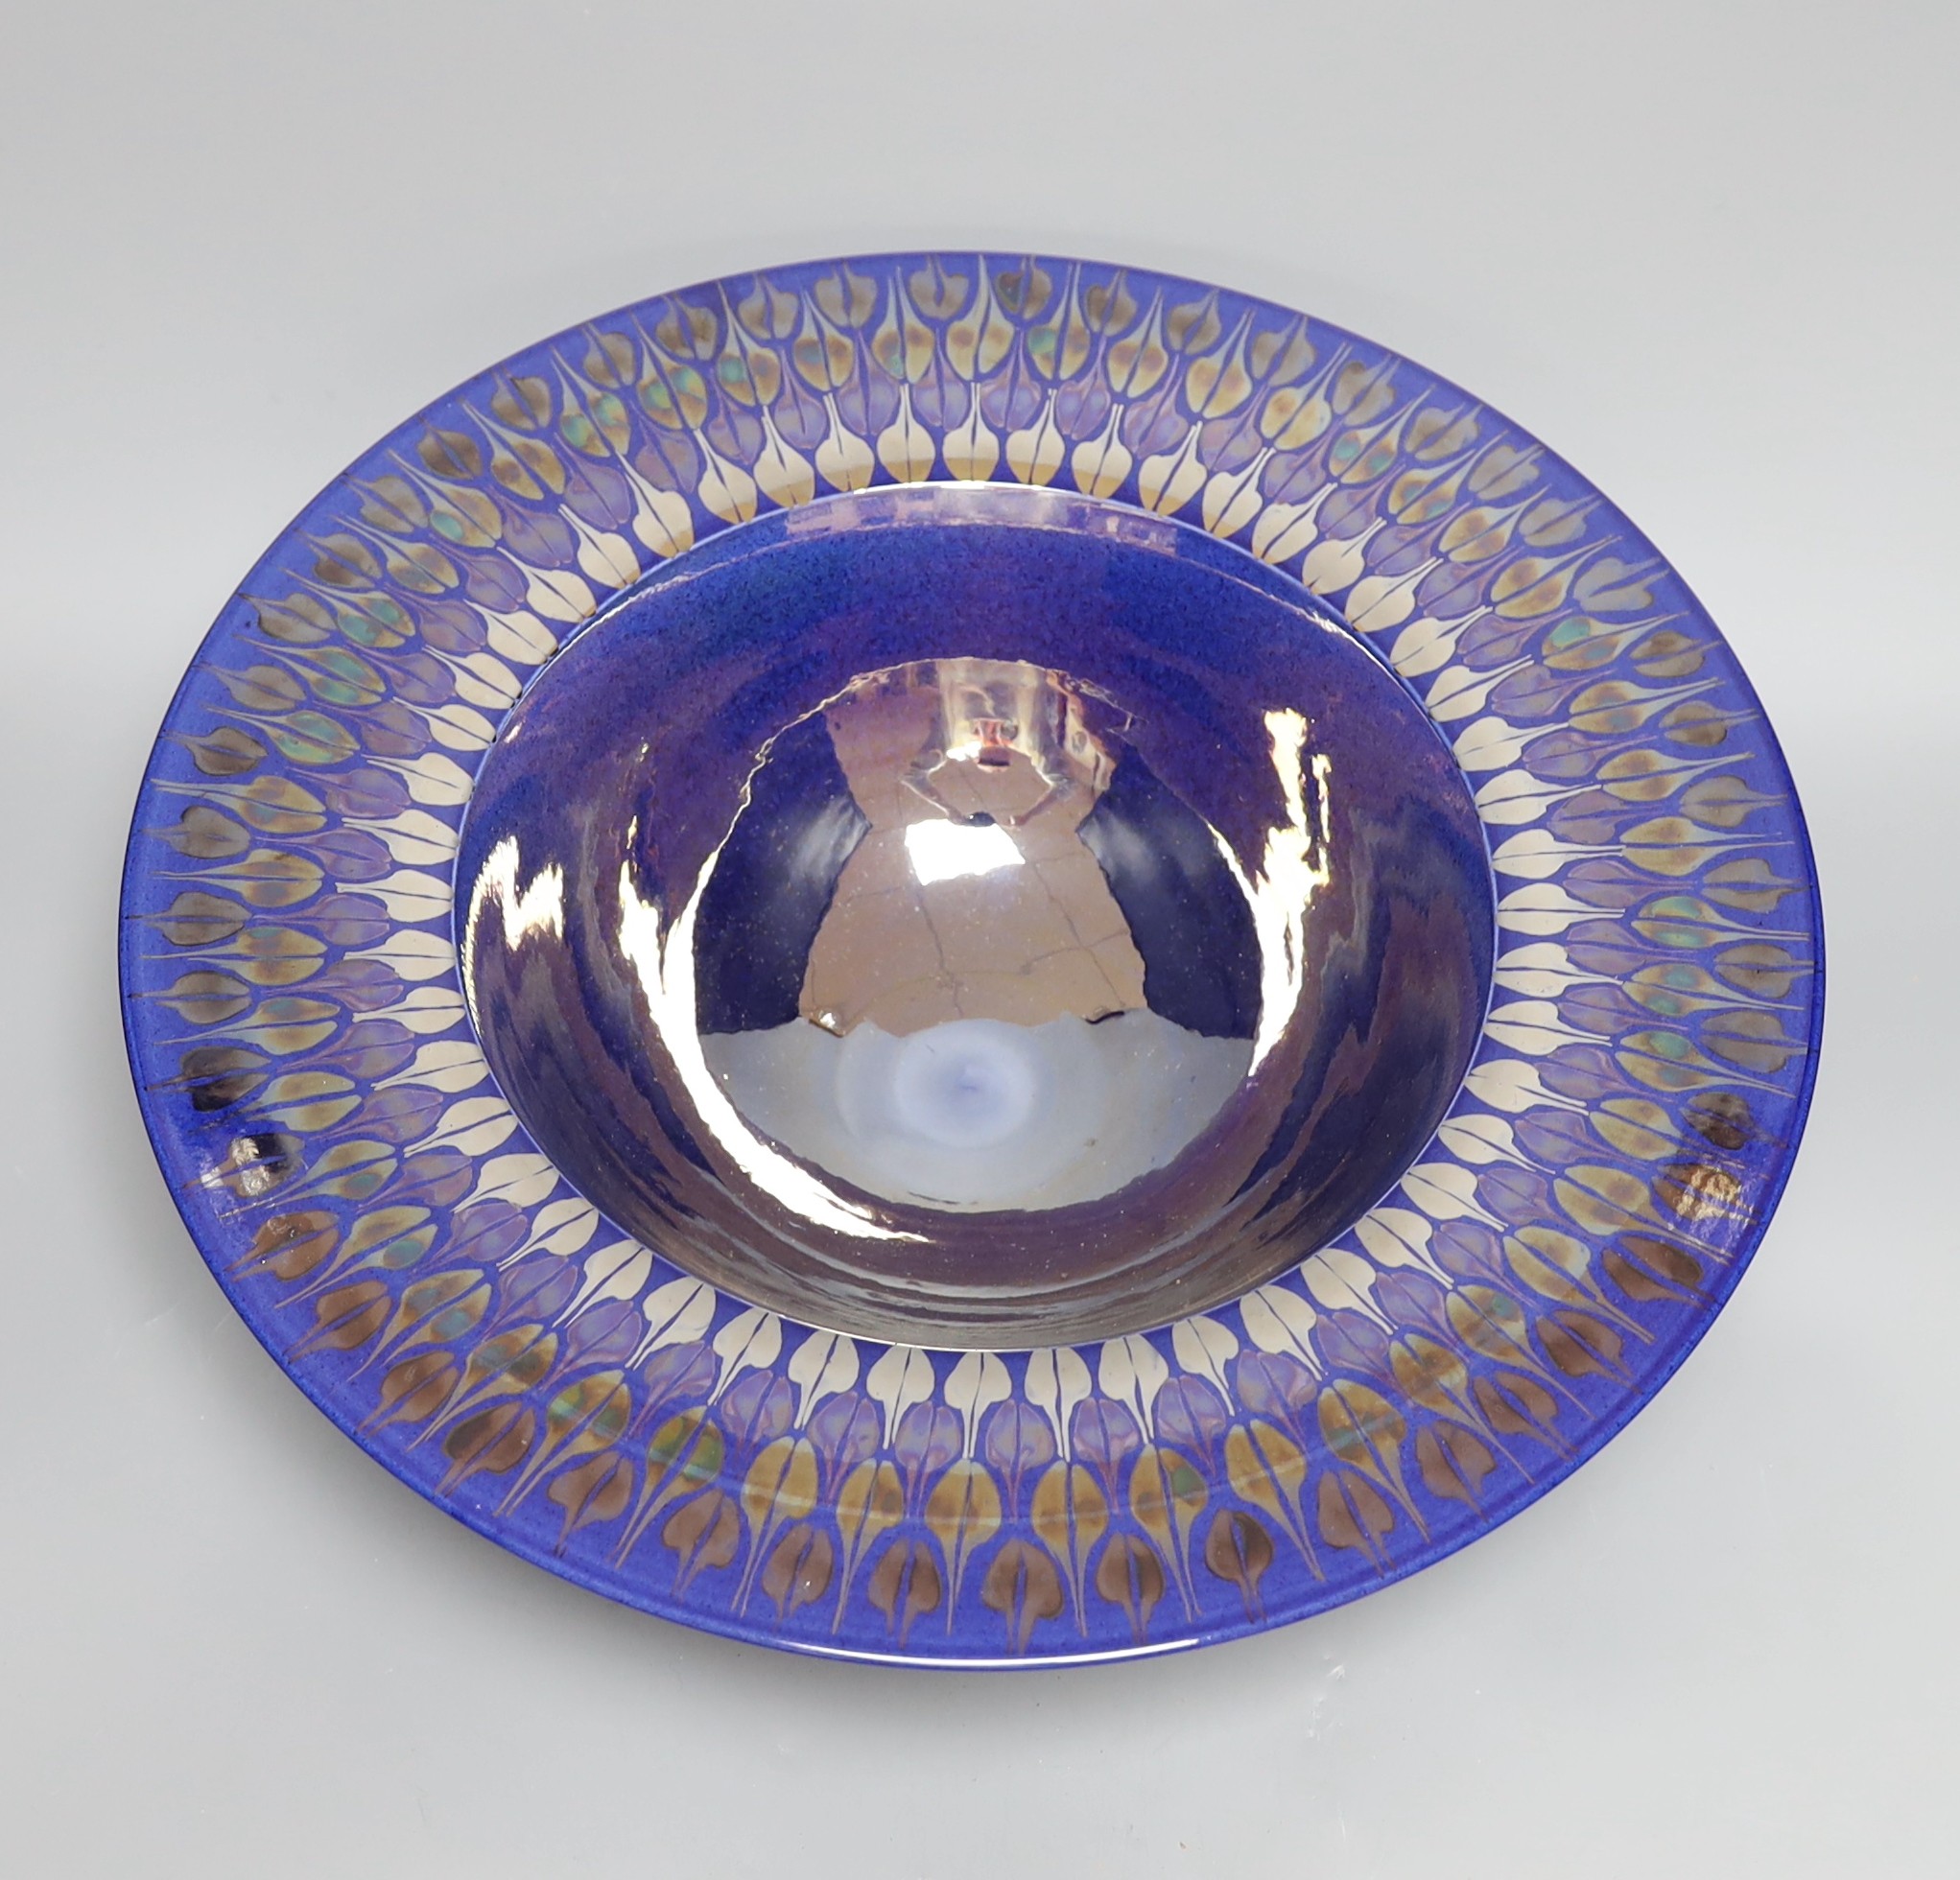 A Tobias Harrison Cumbrian studio pottery blue lustre glazed centre piece bowl, 43 cms diameter